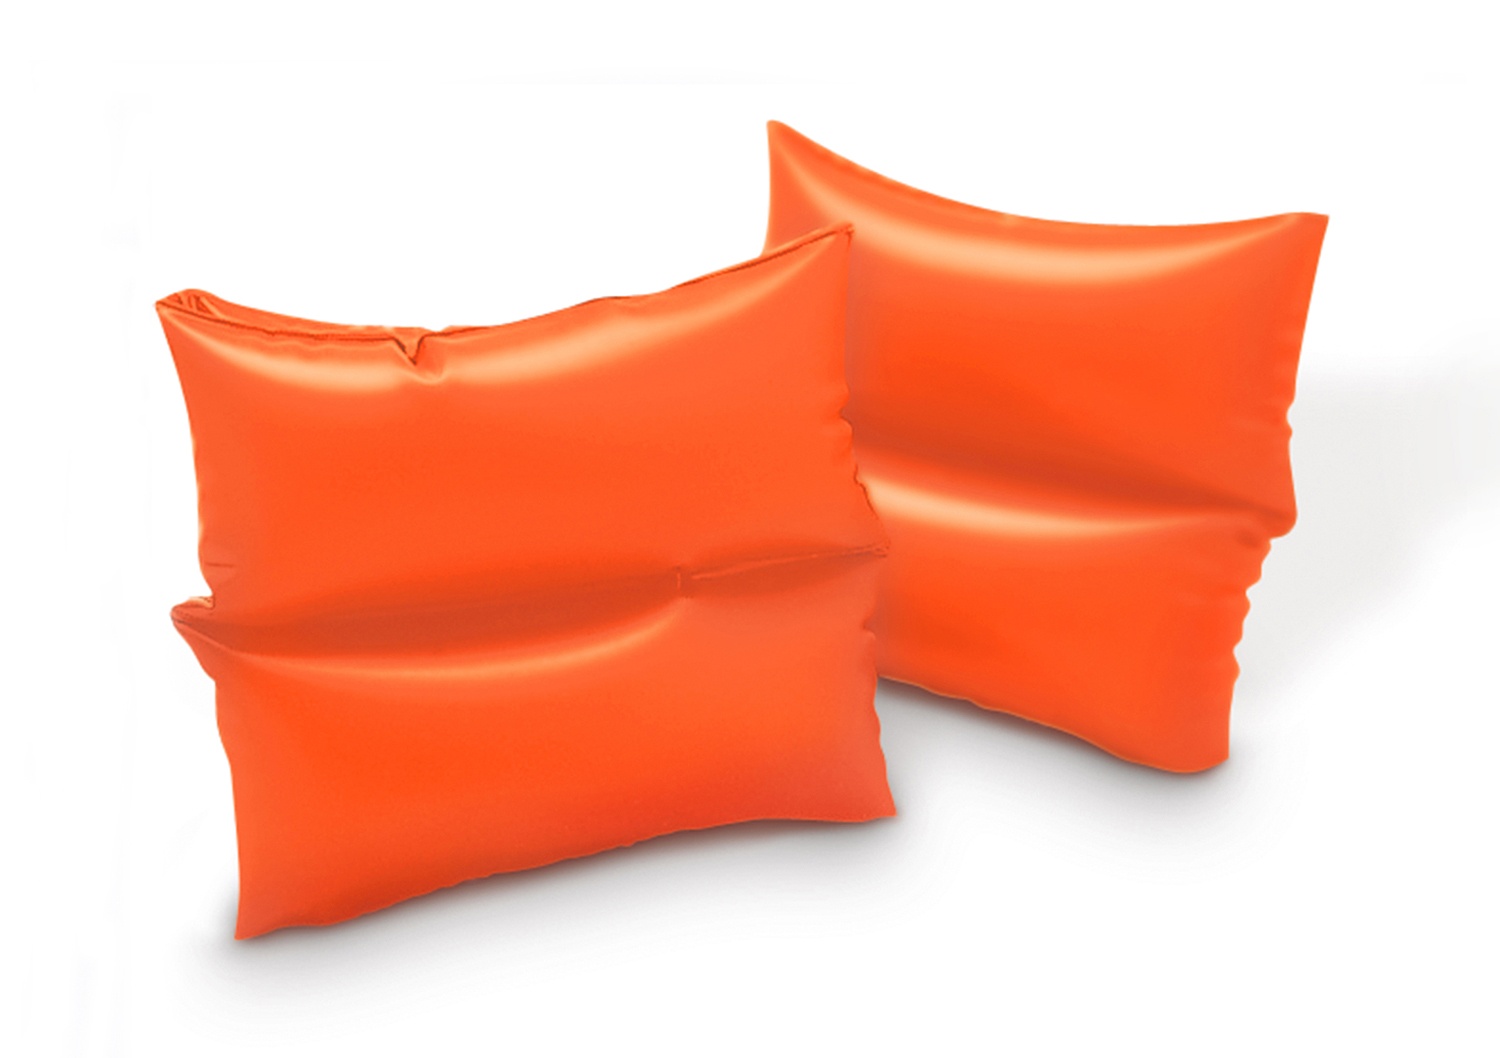 Нарукавники надувные Intex оранжевые Arm Bands (Маленькие), 3-6 лет,19х19 см